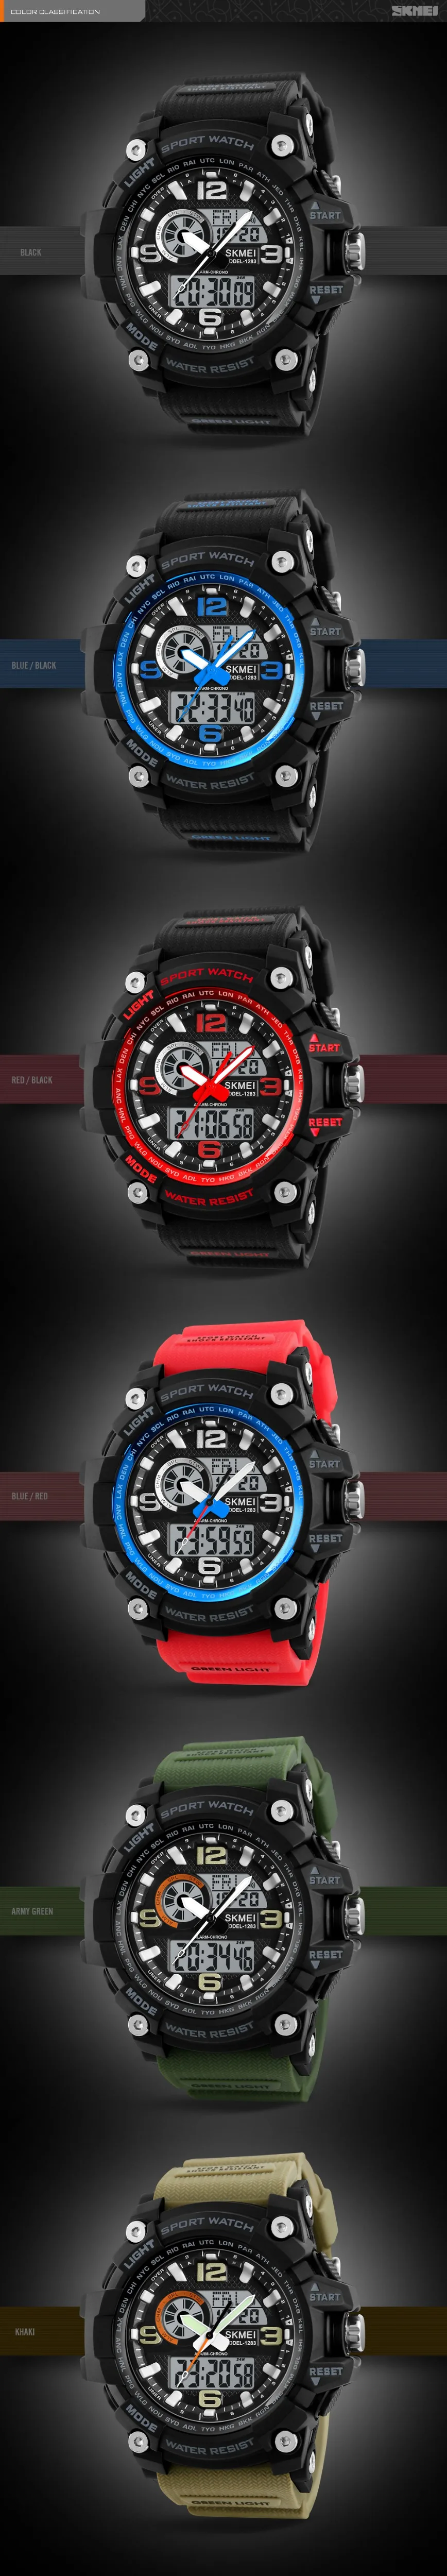 SKMEI модные многофункциональные спортивные часы водонепроницаемые наружные спортивные часы с двойным дисплеем наручные часы с хронографом и будильником